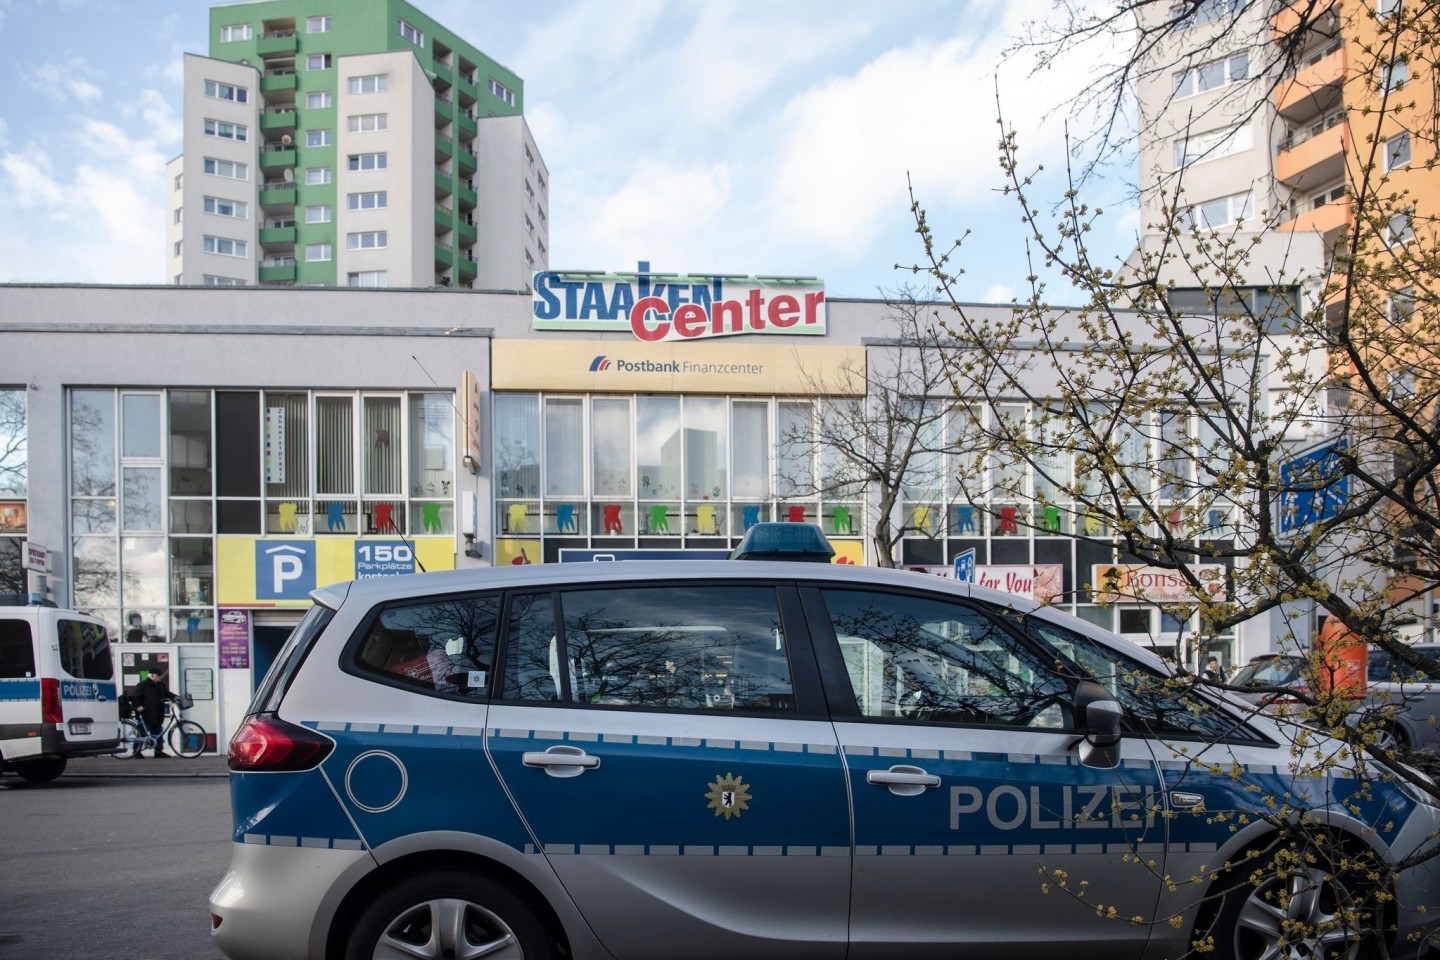 Bei einem Streit zwsichen zwei Männern in diesem Einkaufszentrum in Berlin wurde einer der beiden Männer mit einem Messer lebensgefährlich verletzt.